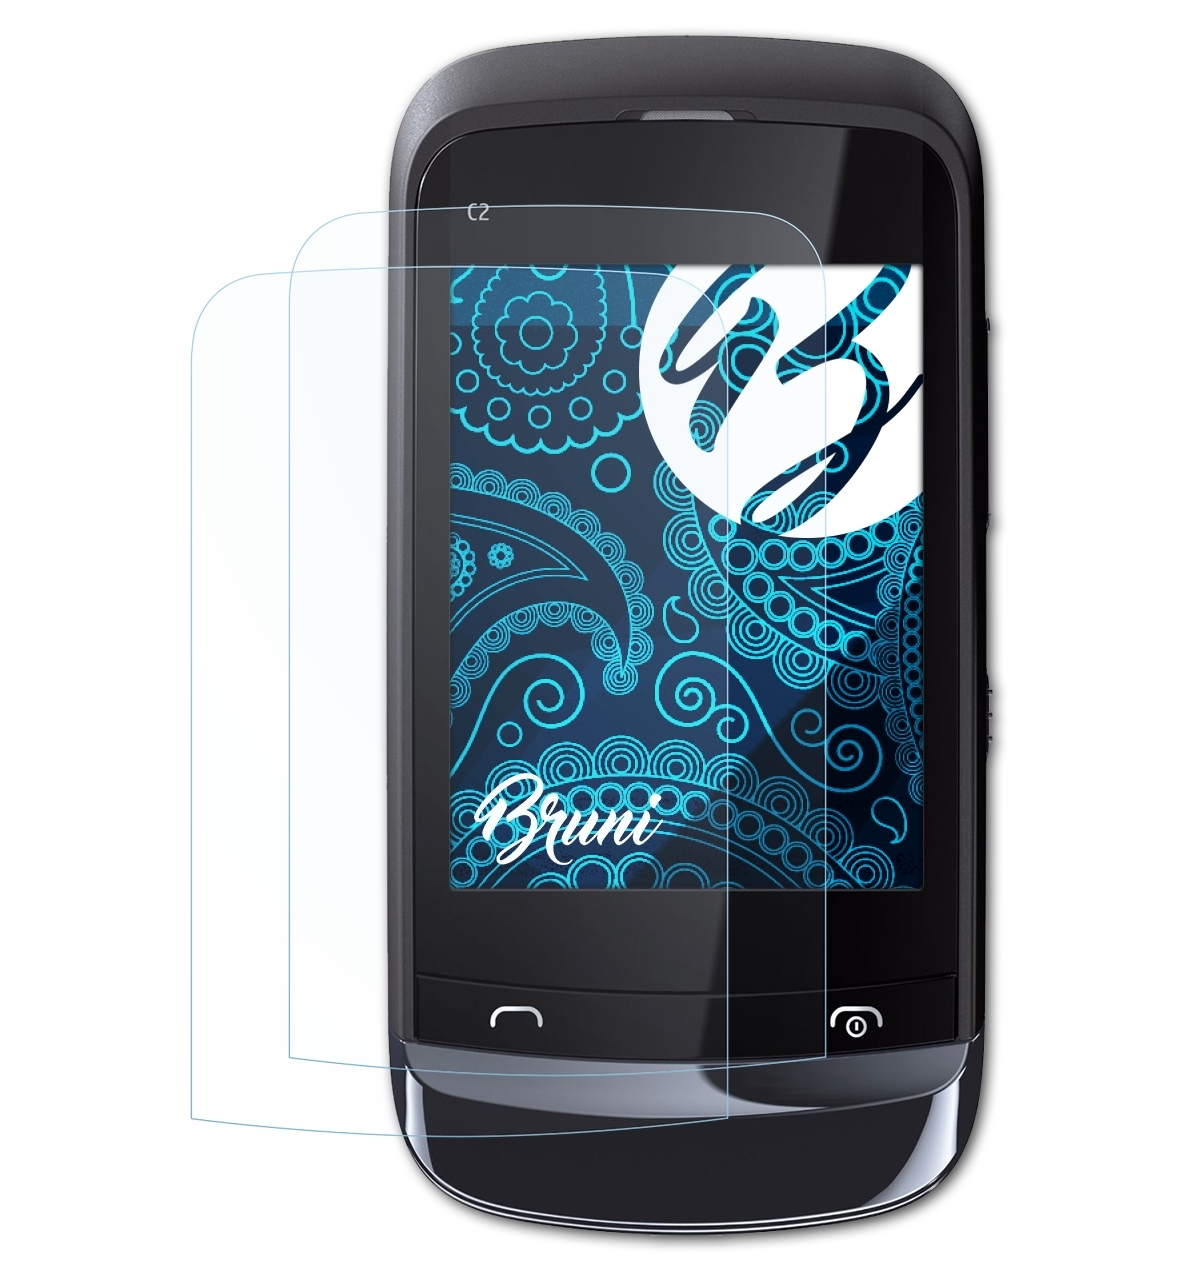 BRUNI 2x Basics-Clear Schutzfolie(für Nokia C2-03)